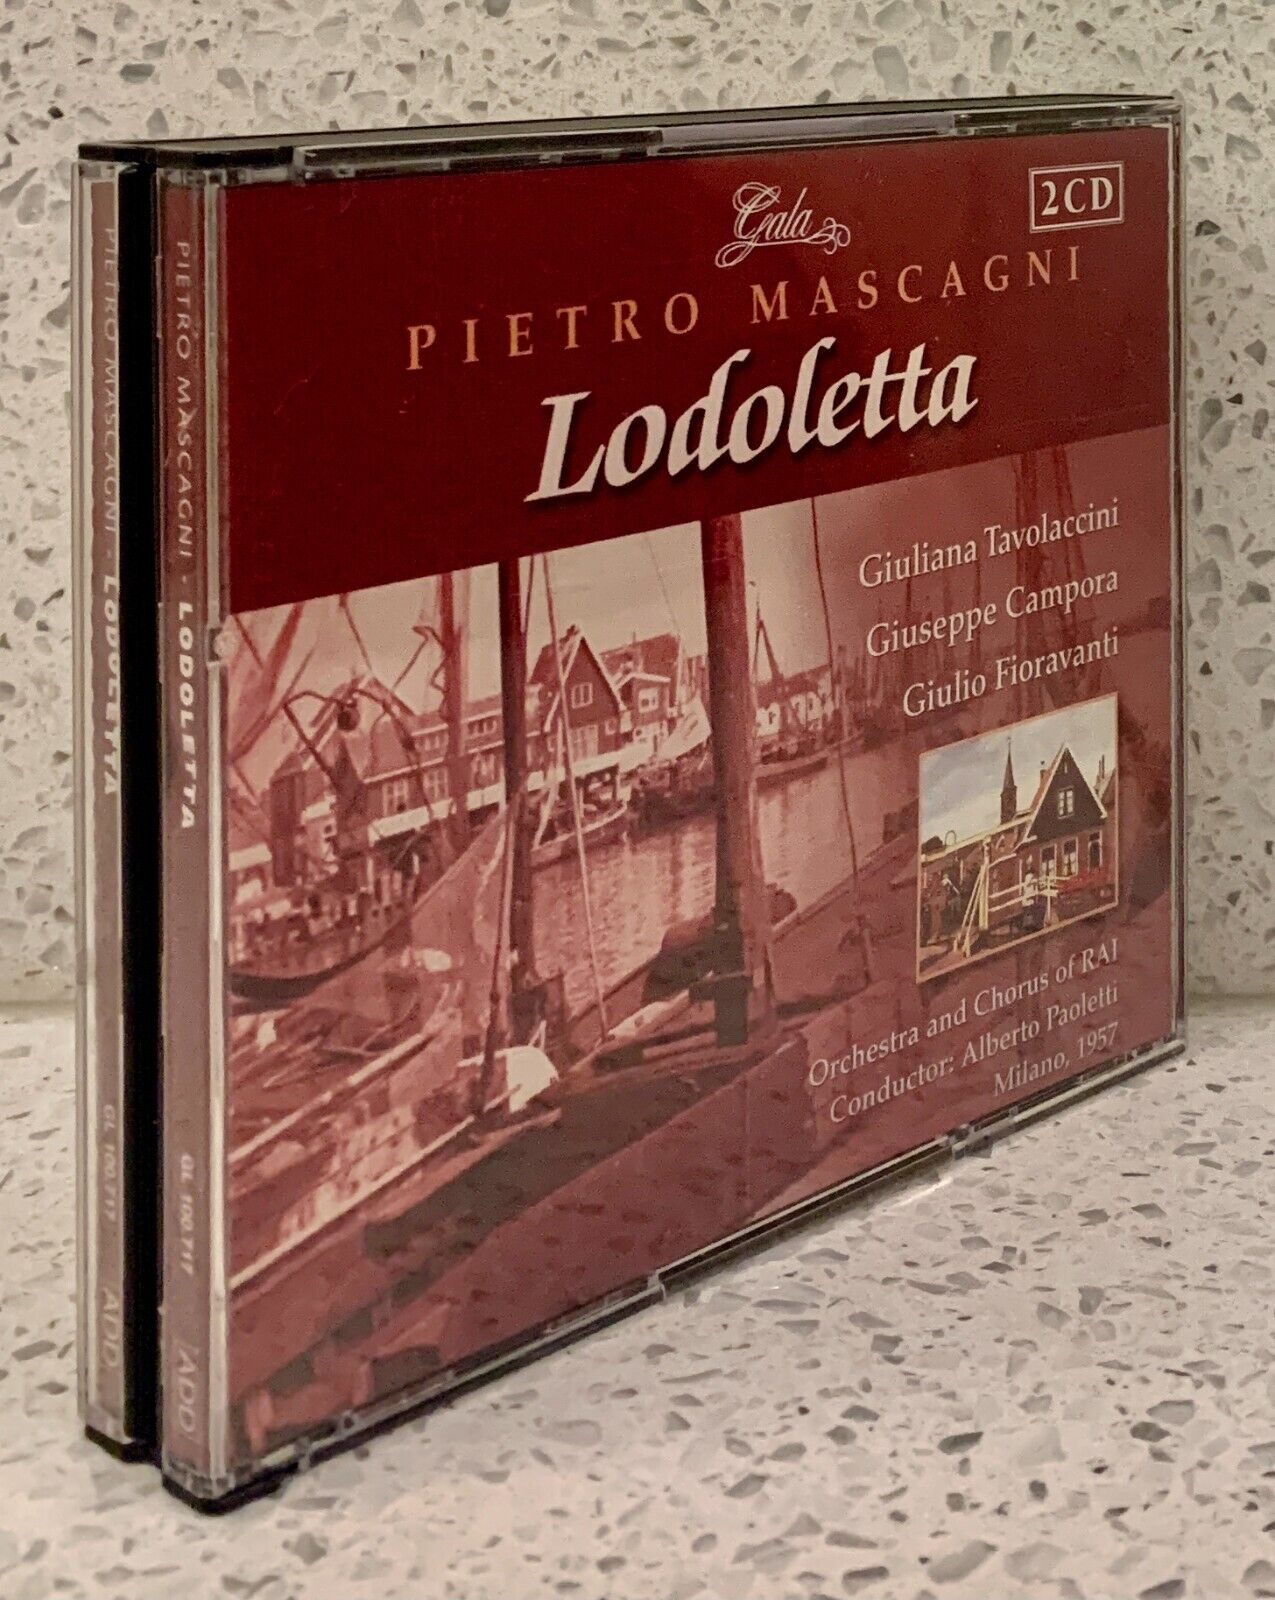 MASCAGNI Lodoletta [1957] (2 discs, GALA) PAOLETTI • TAVOLACCINI • CAMPORA